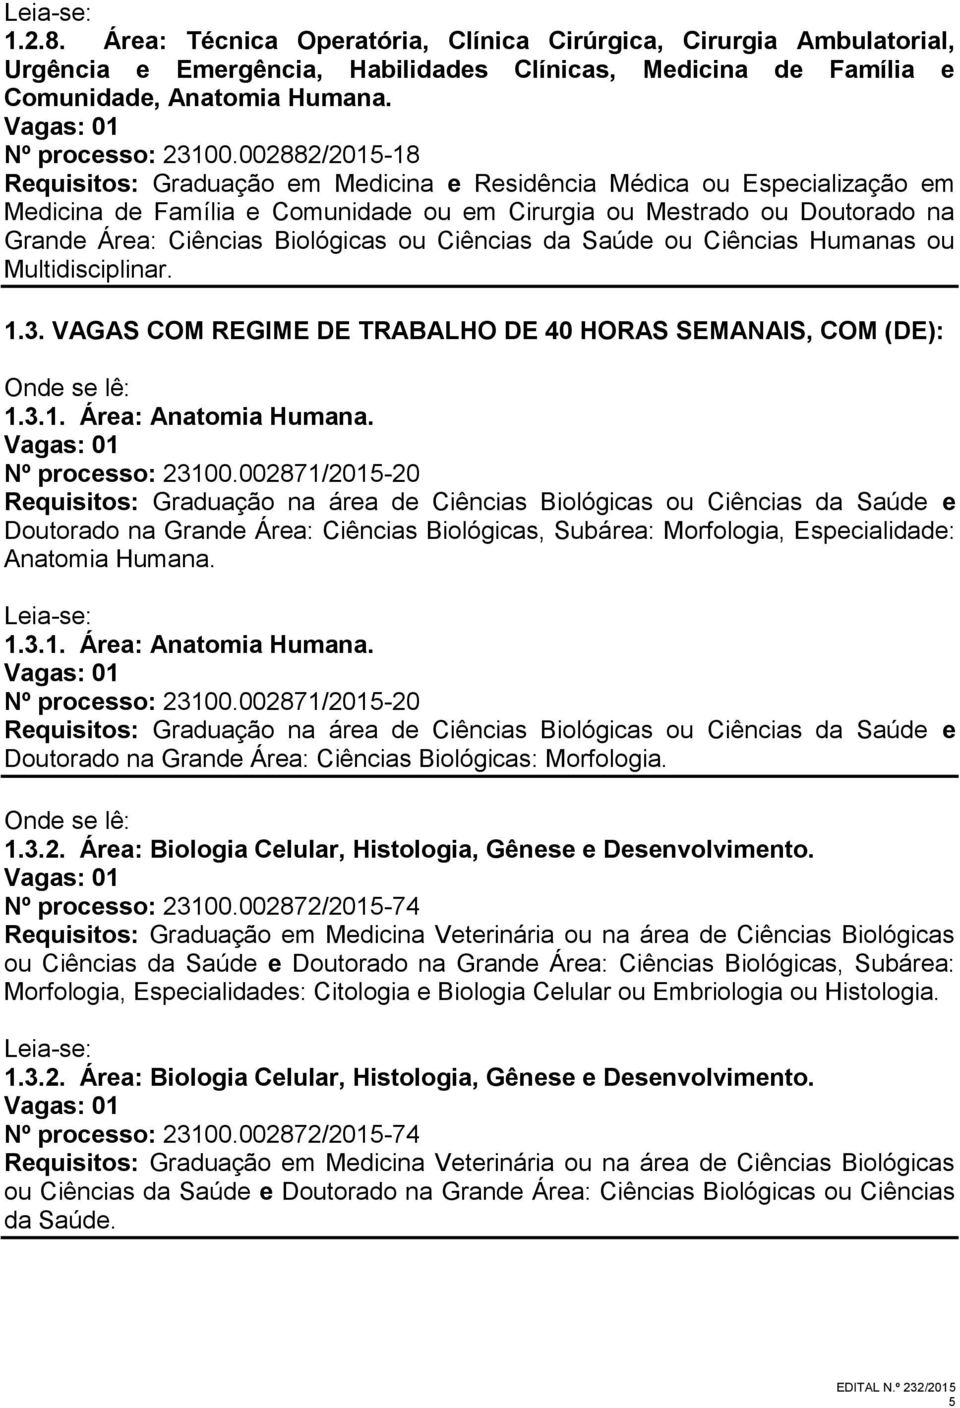 VAGAS COM REGIME DE TRABALHO DE 40 HORAS SEMANAIS, COM (DE): 1.3.1. Área: Anatomia Humana. Nº processo: 23100.